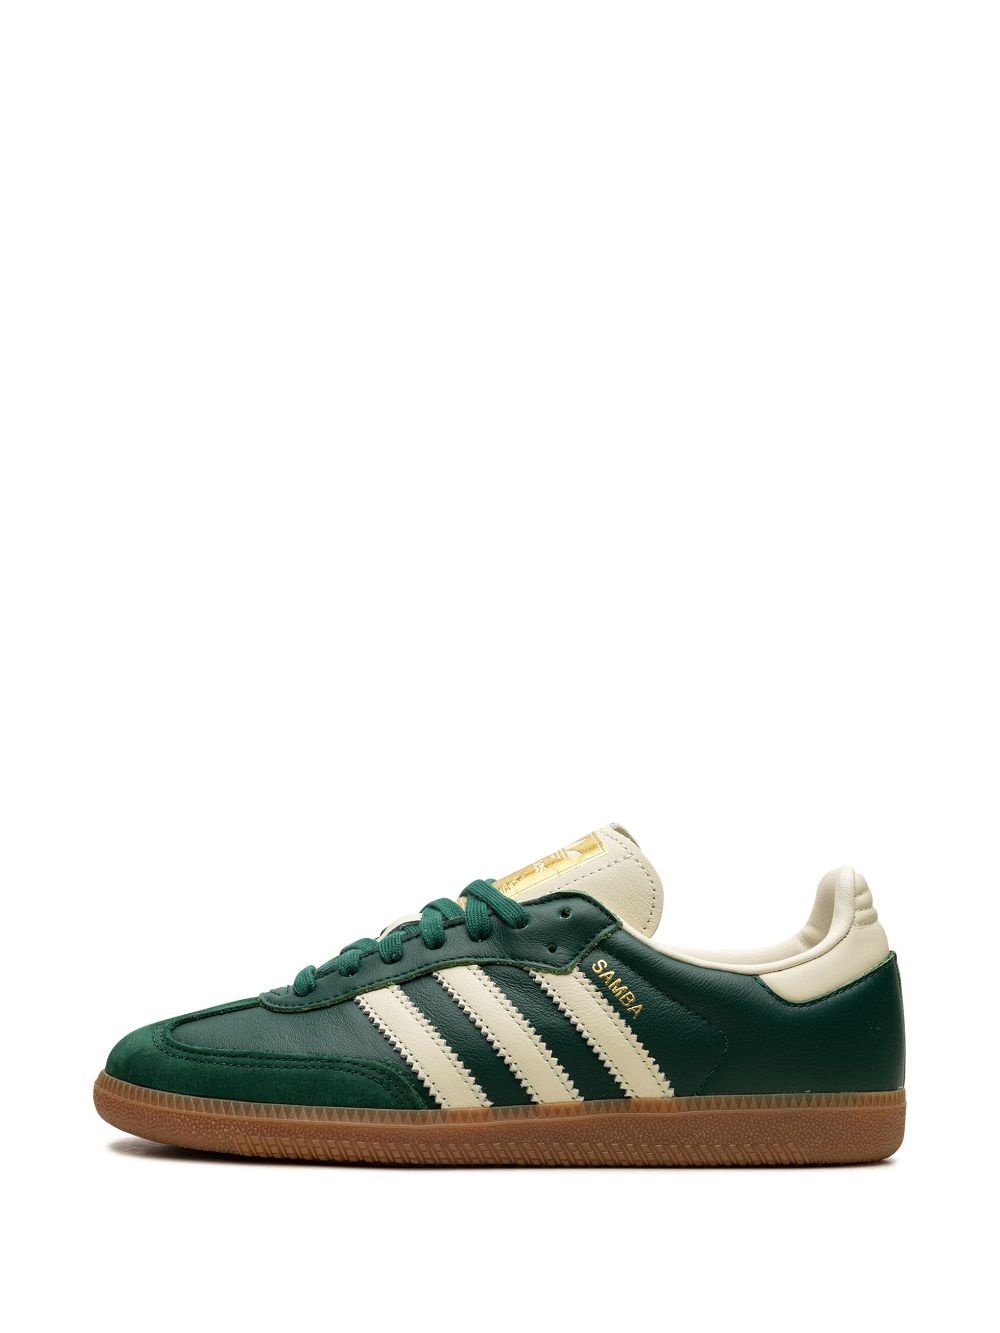 Samba OG "Collegiate Green" sneakers - 5